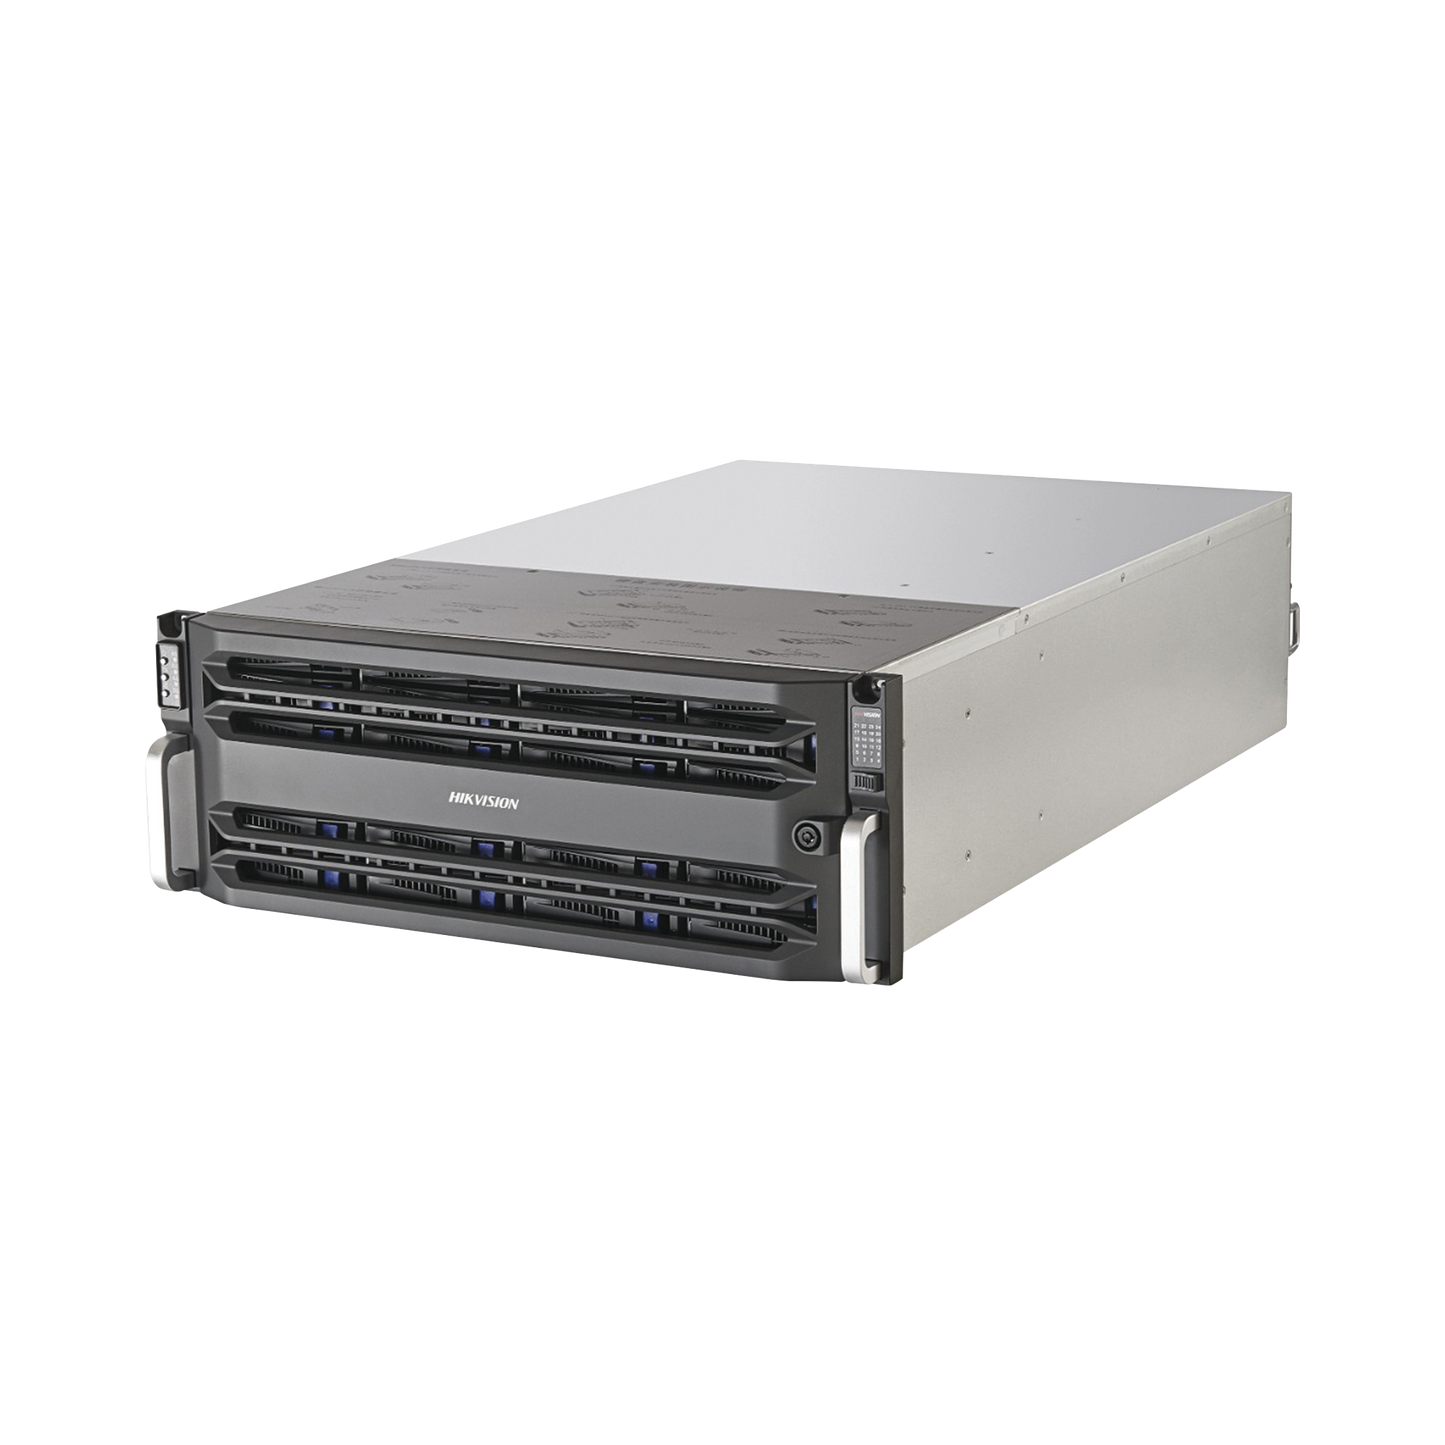 Servidor de Almacenamiento en Red / Soporta 24 Discos Duros (Incluye 24 Discos de 10 TB) / RAID / iSCSI / Graba 448 canales IP / Doble Controlador